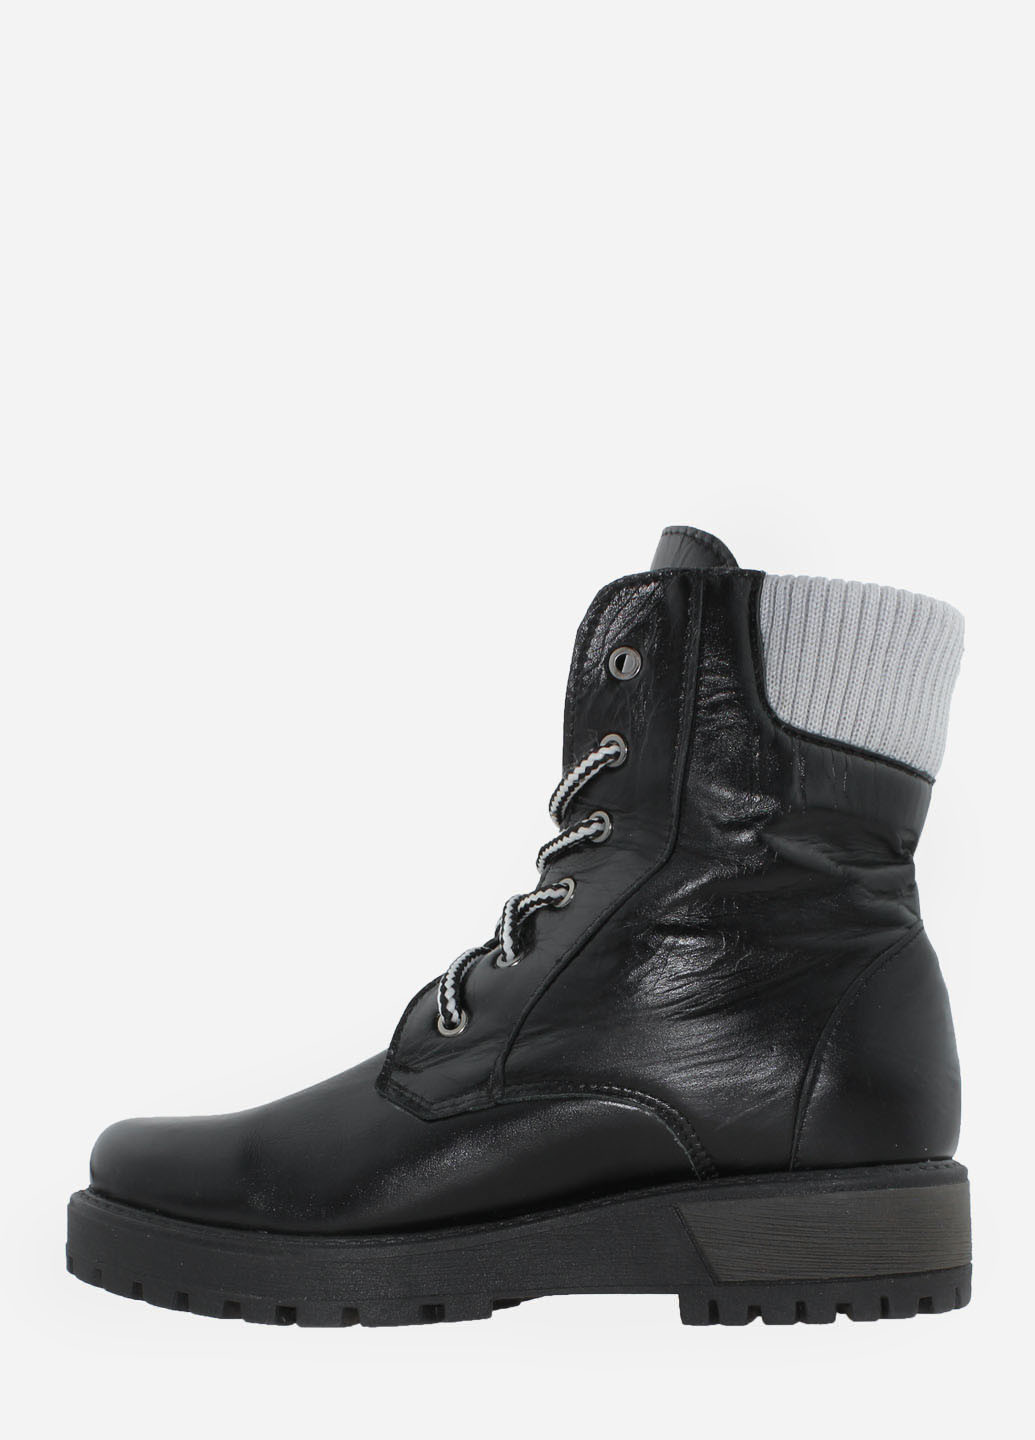 Зимние ботинки rg368 черный Gampr